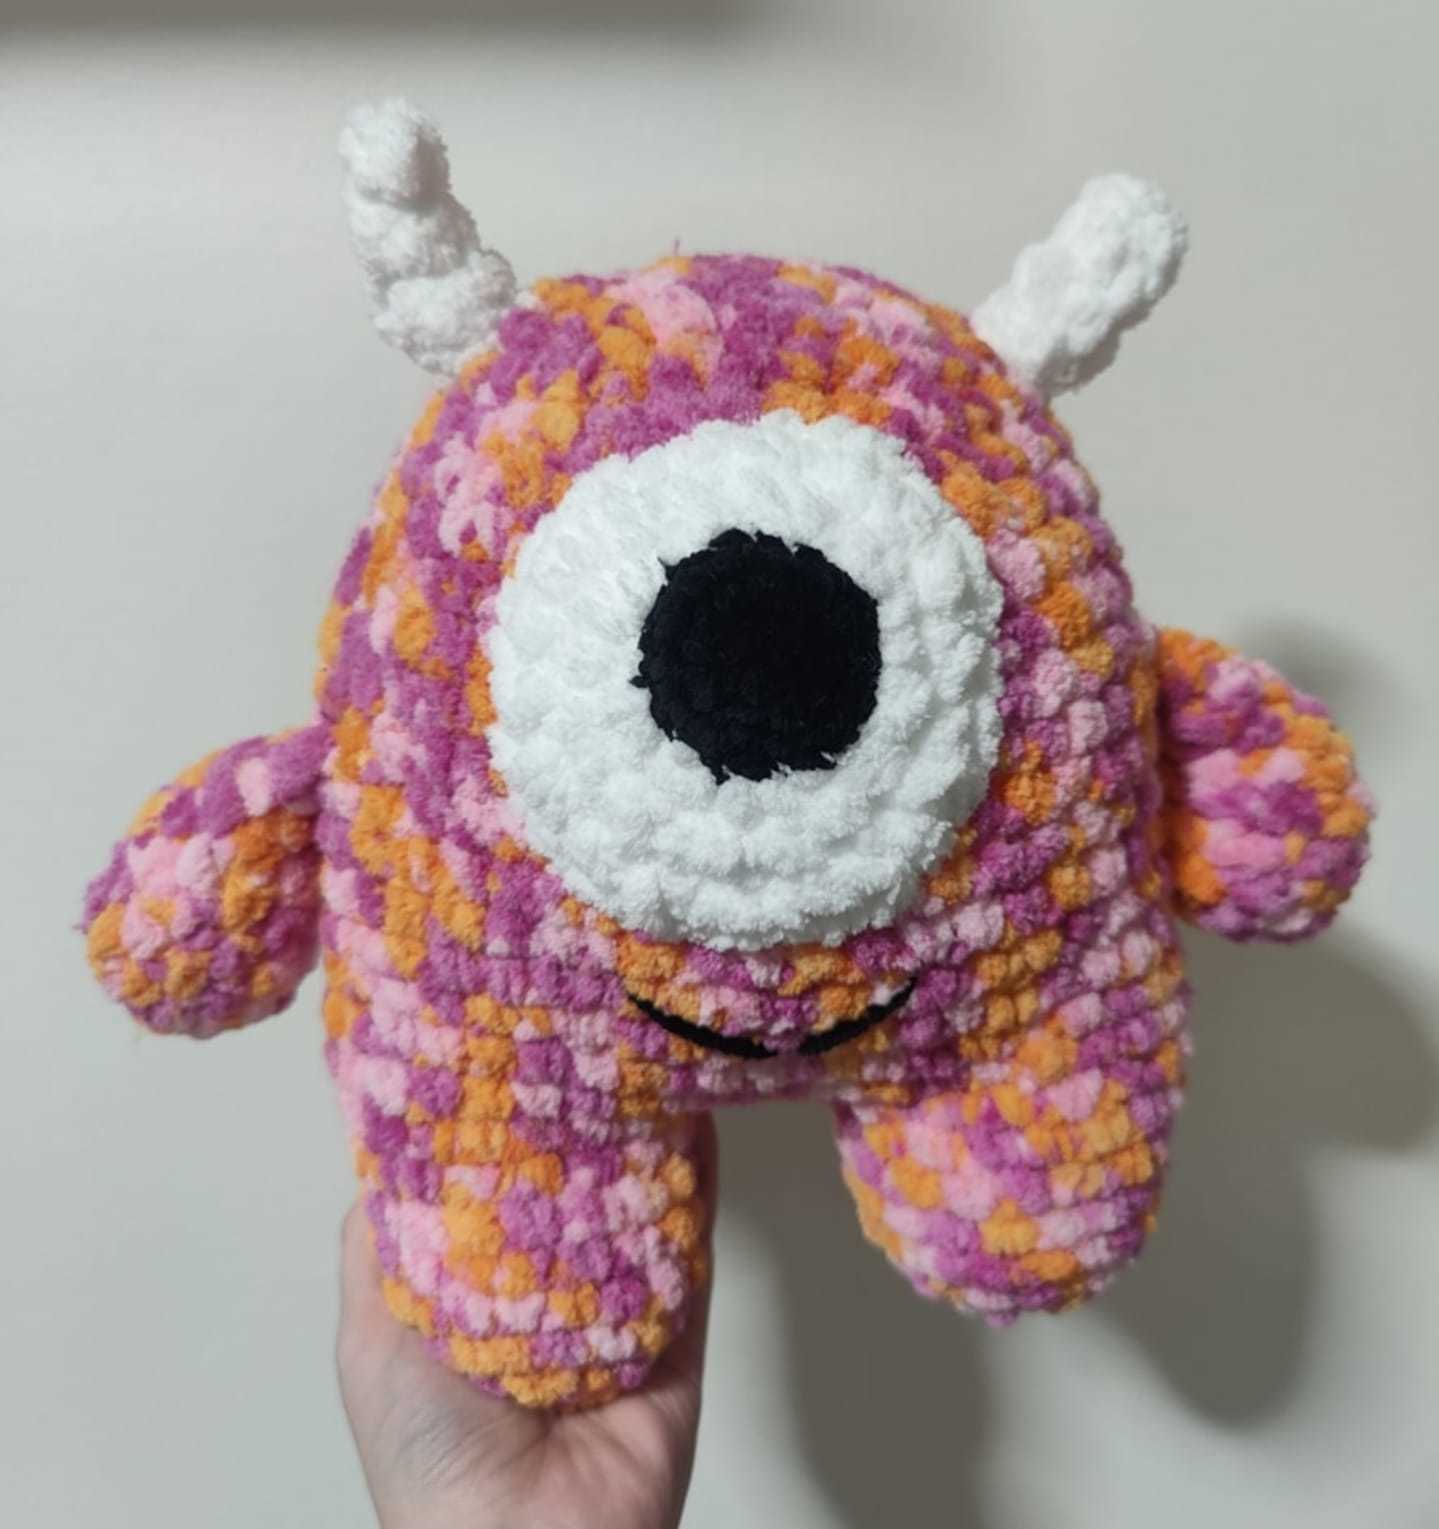 A crochet monster